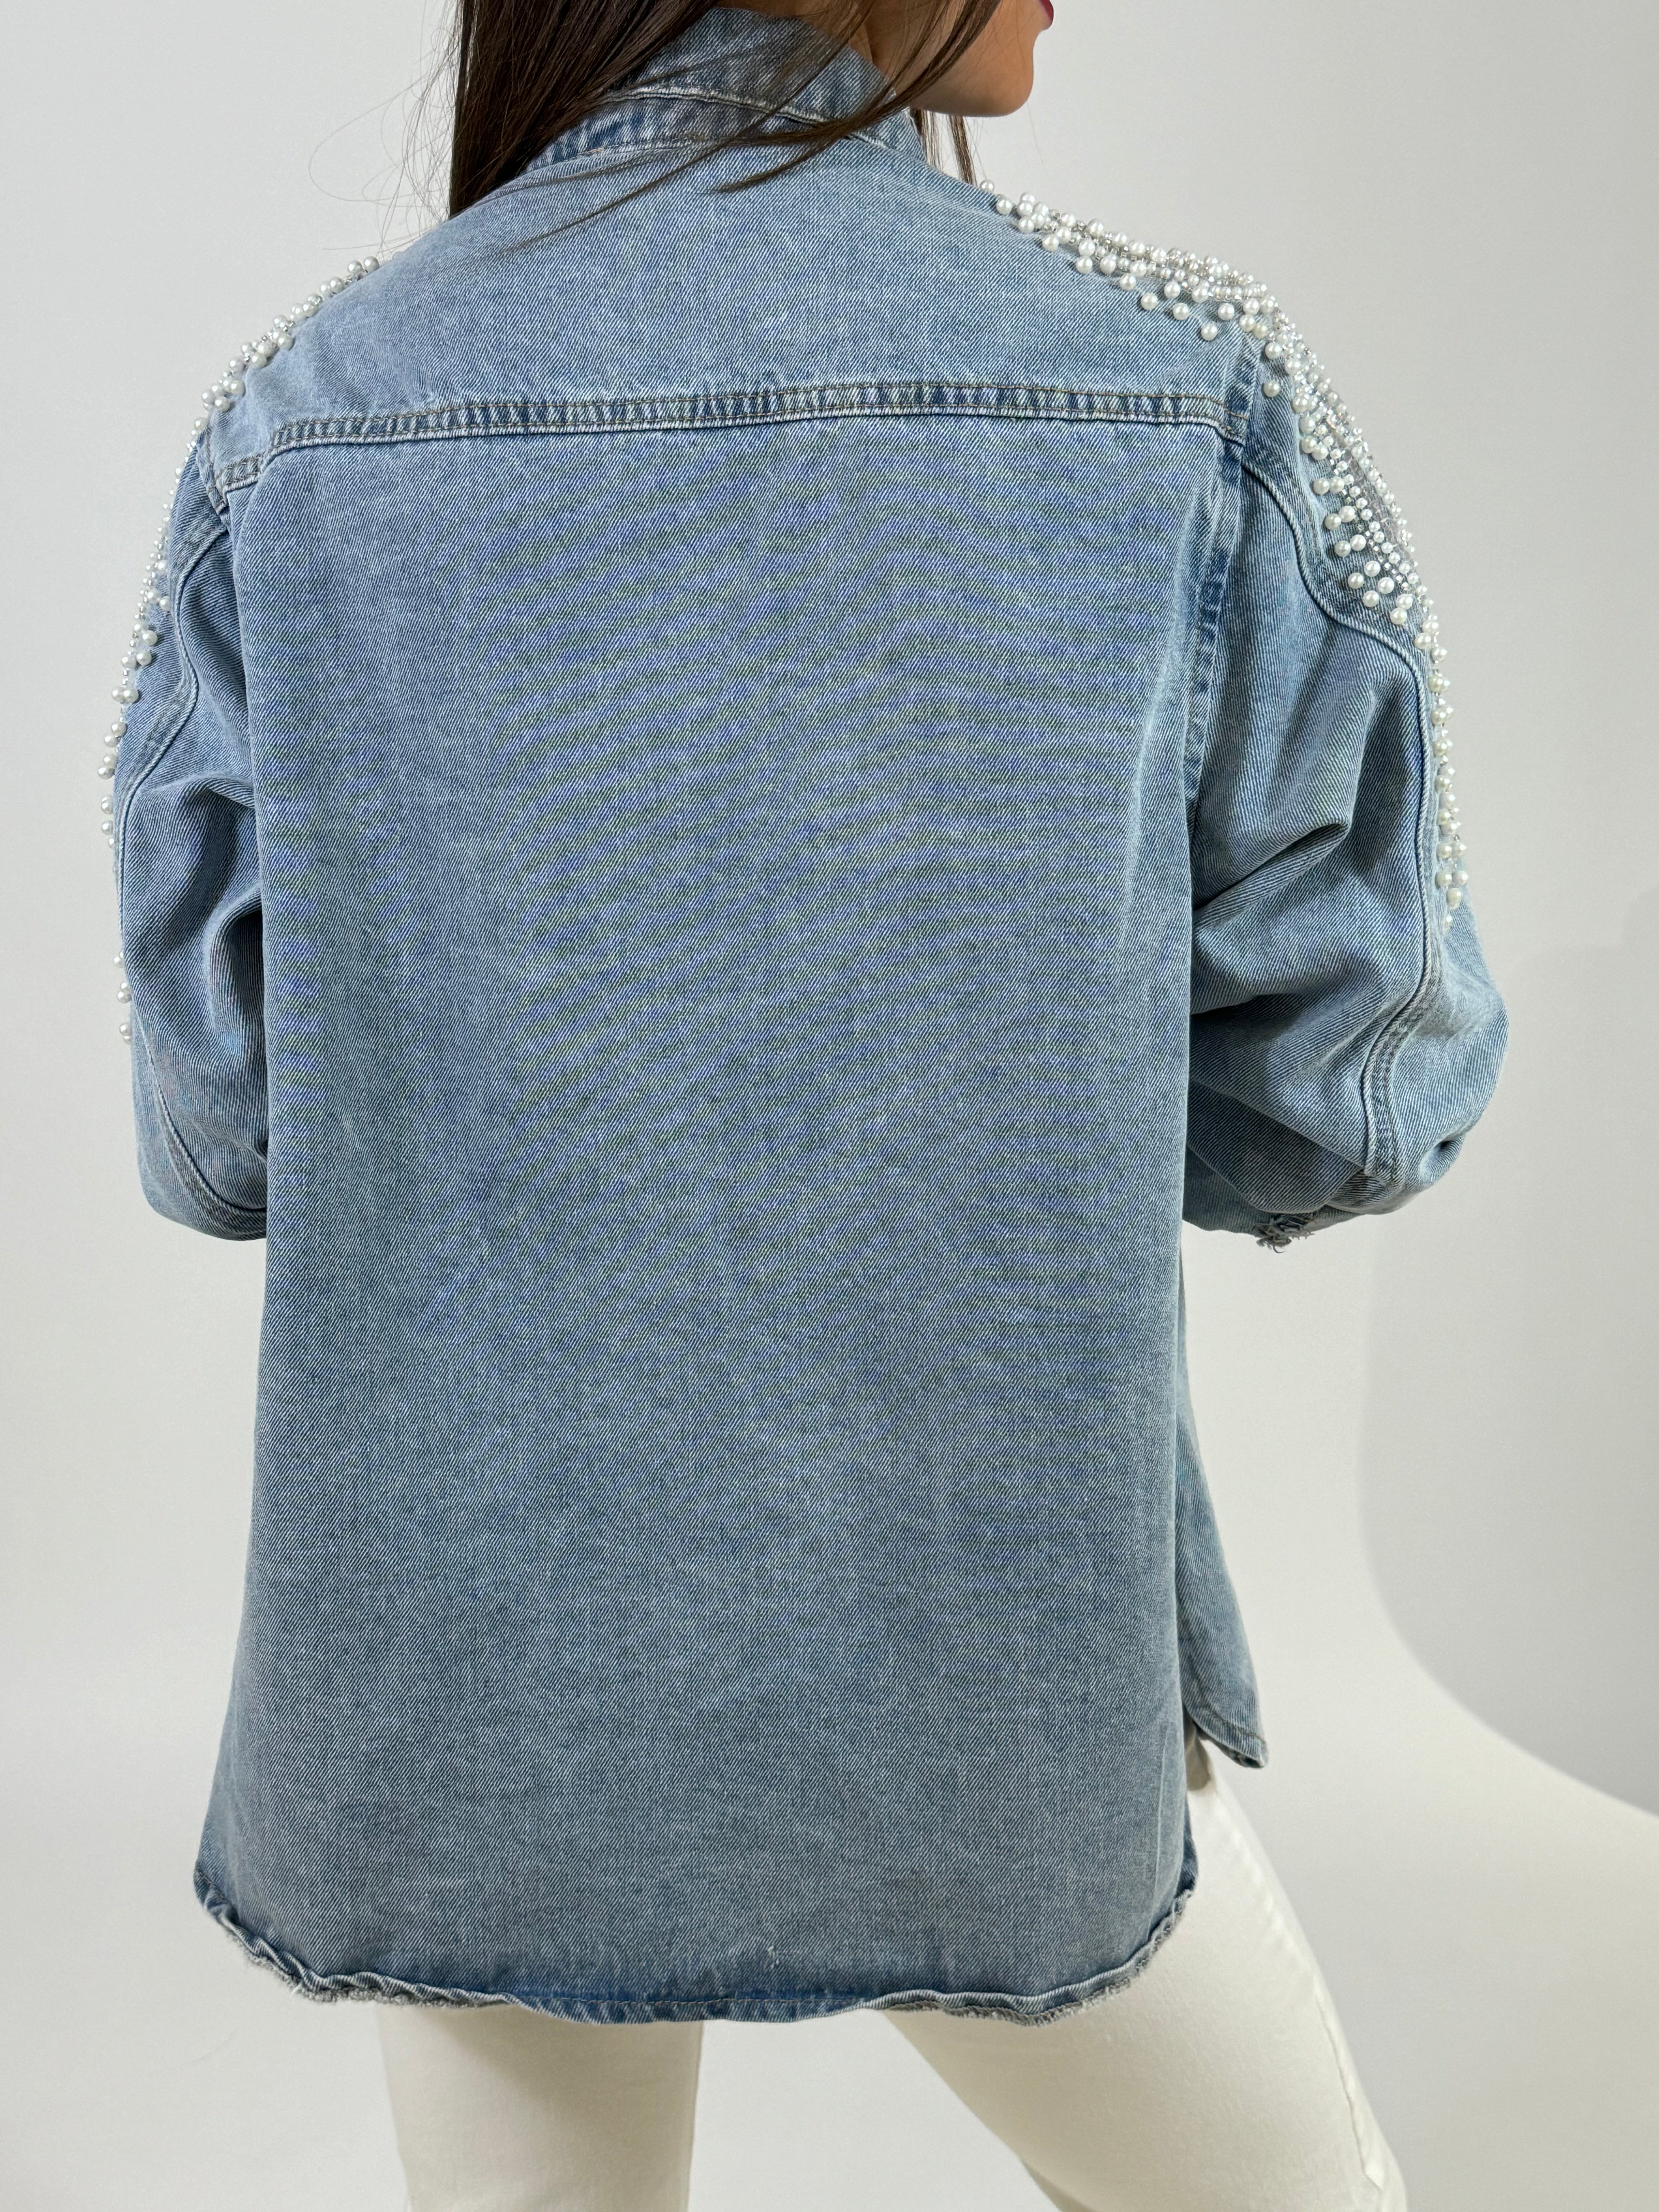 Giacca di jeans Susy Mix applicazioni perle e paillettes